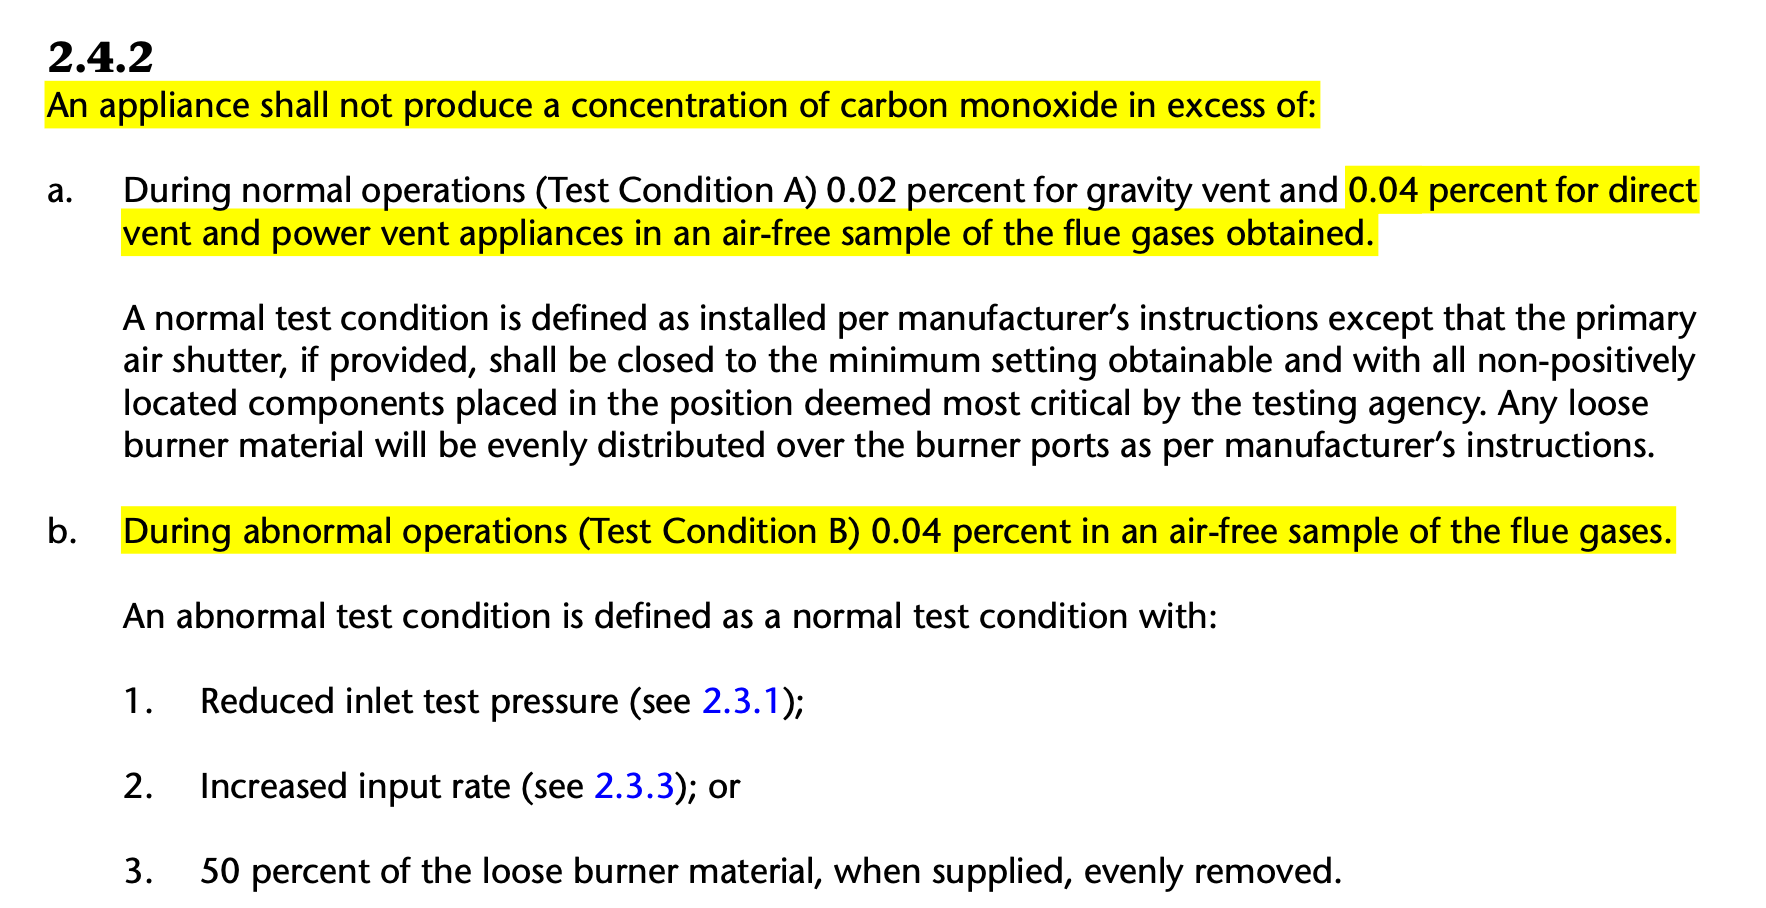 heater emissions carbon monoxide